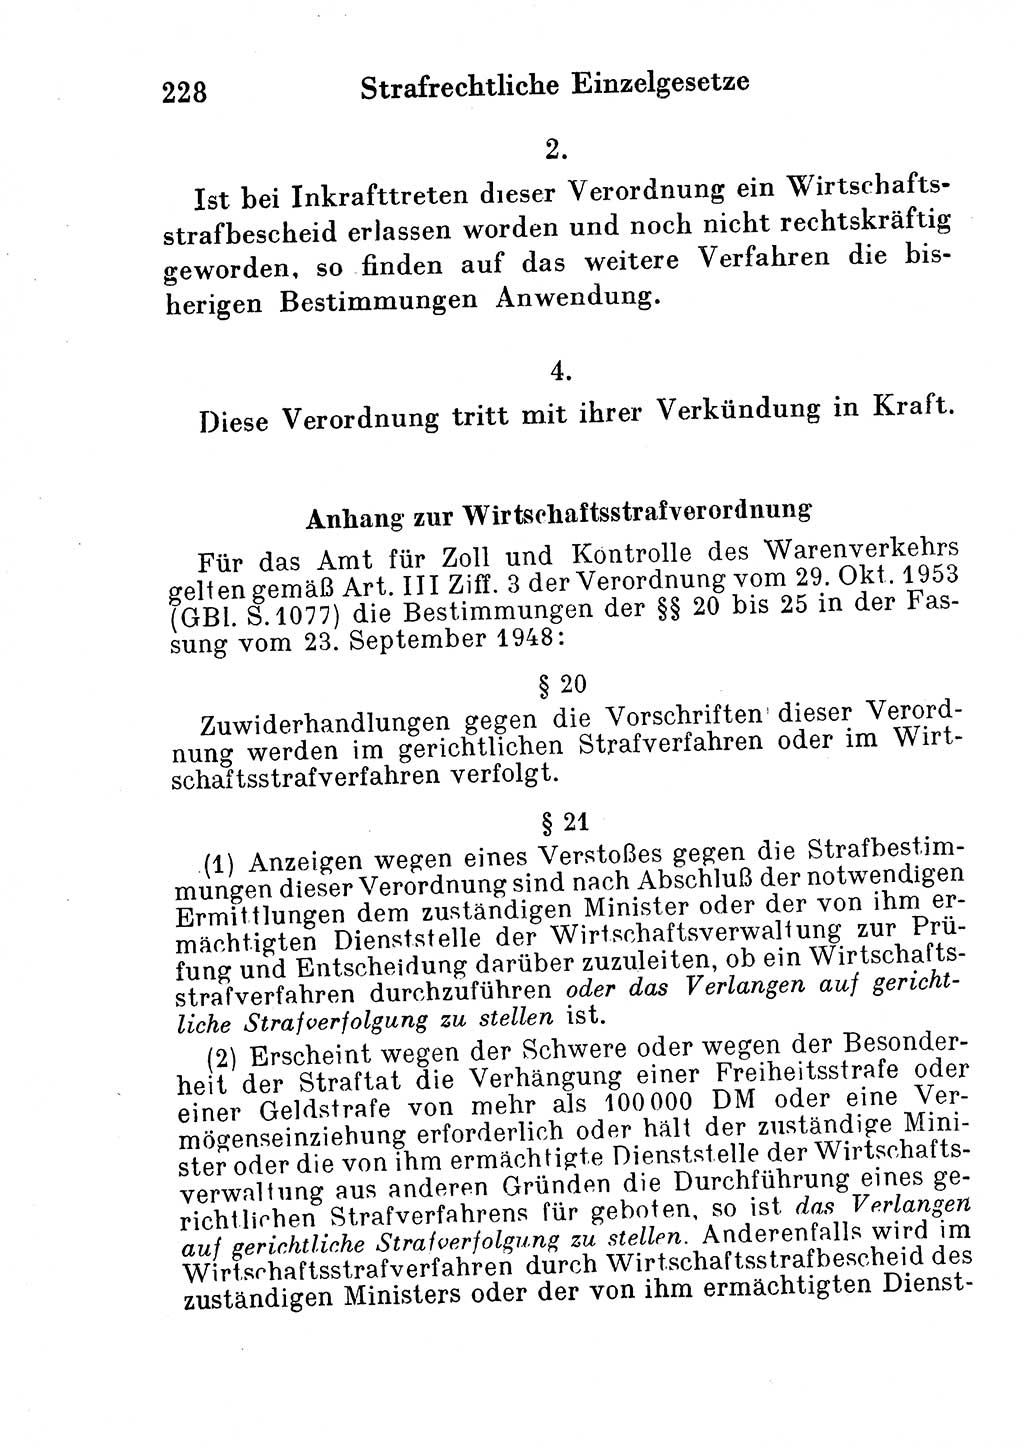 Strafgesetzbuch (StGB) und andere Strafgesetze [Deutsche Demokratische Republik (DDR)] 1954, Seite 228 (StGB Strafges. DDR 1954, S. 228)